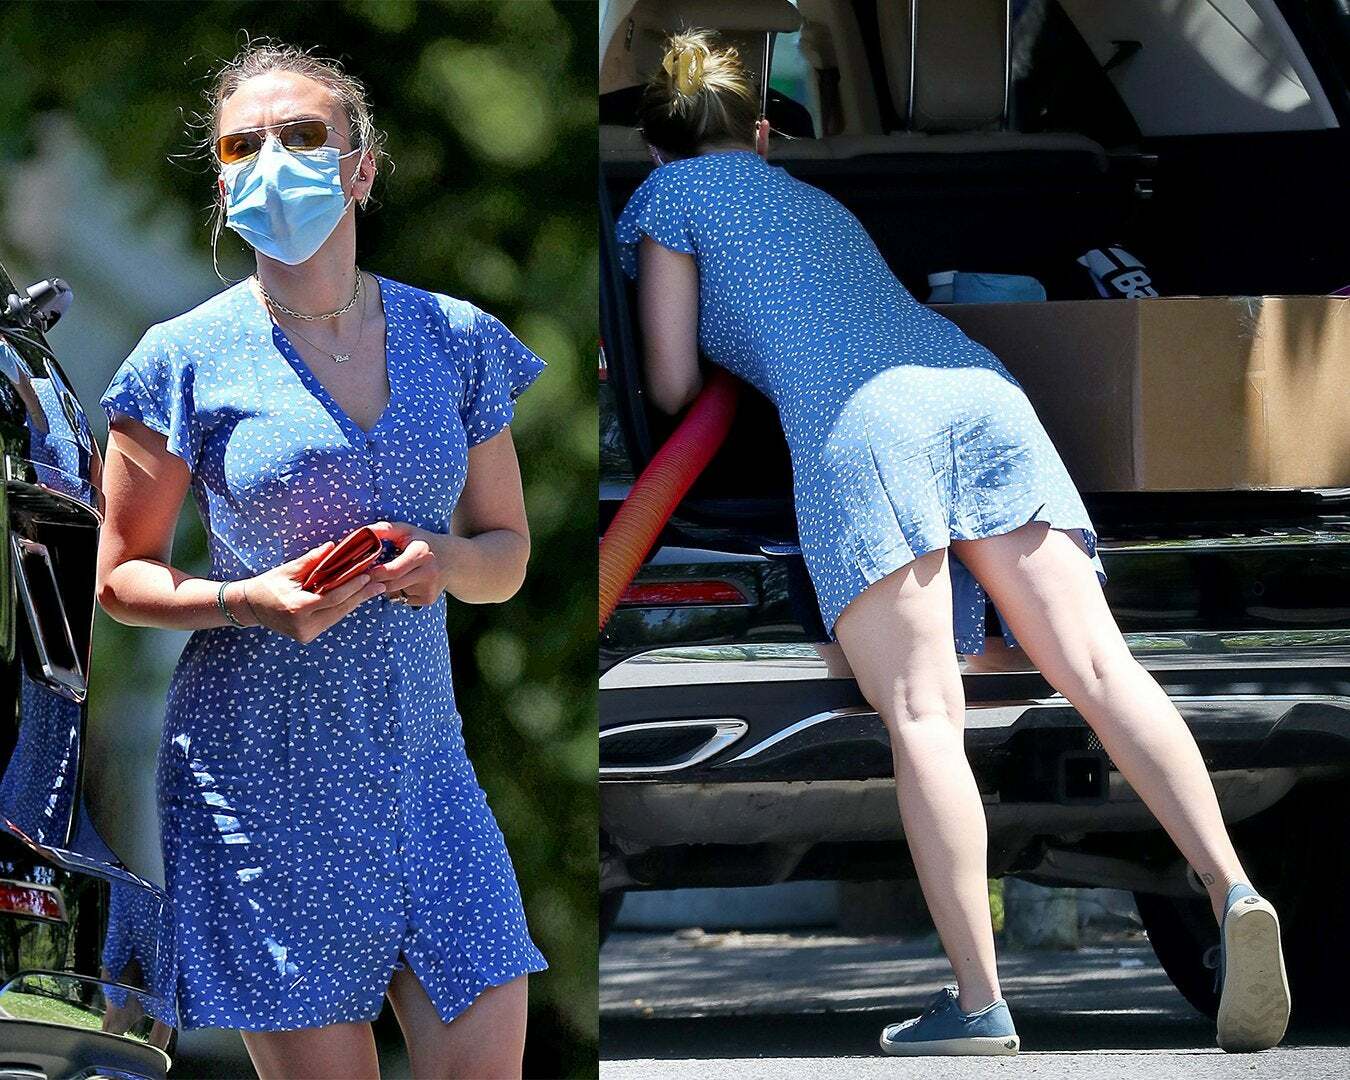 Scarlett Johansson cleaning her SUV